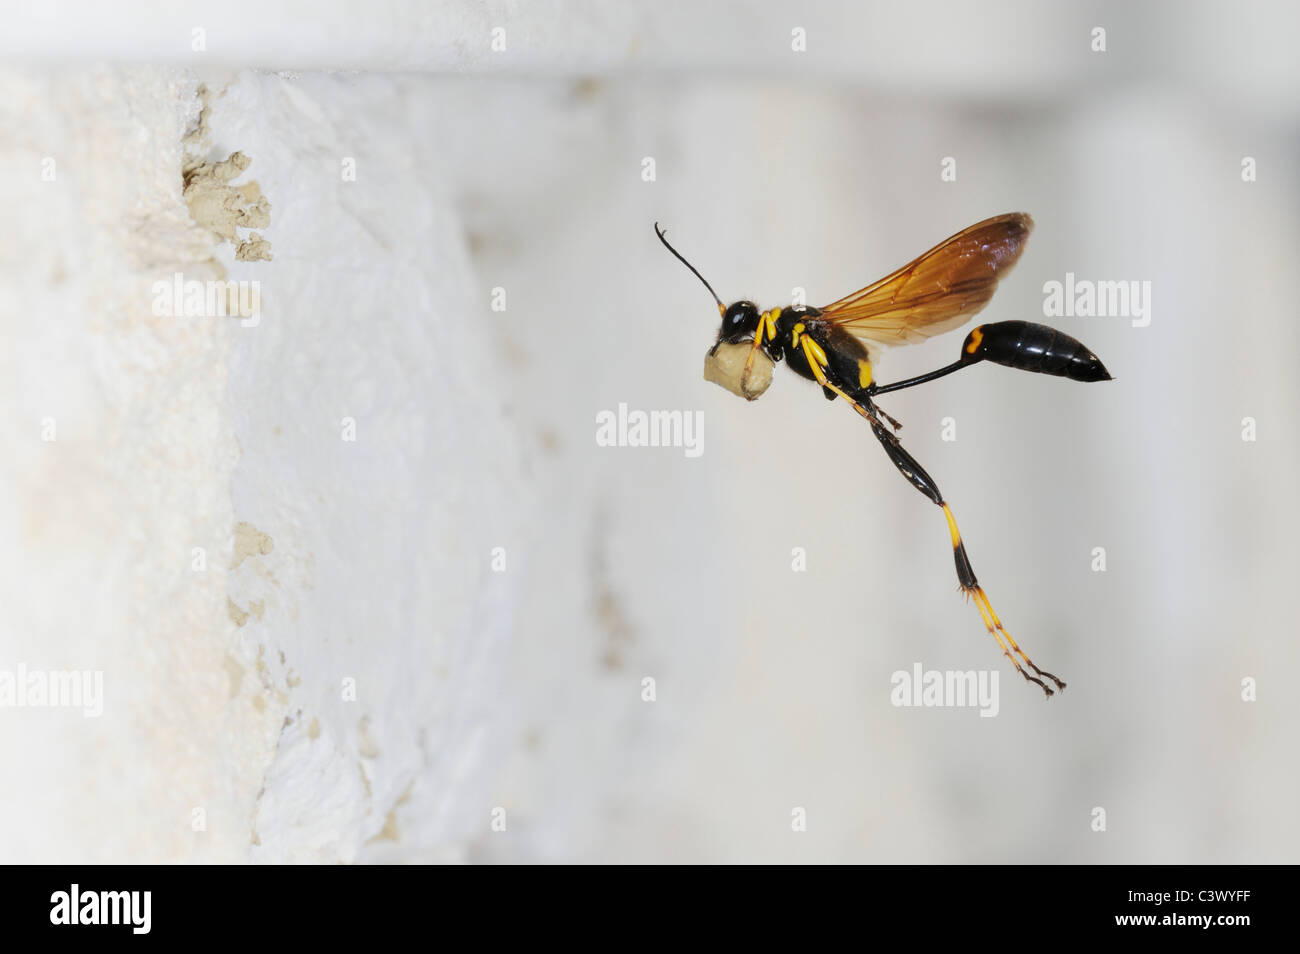 Schwarz und gelb Schlamm Dauber (Sceliphron Caementarium), weibliche im Flug bringt Schlamm zu verschachteln, Innenwand, Comal County, Texas Stockfoto